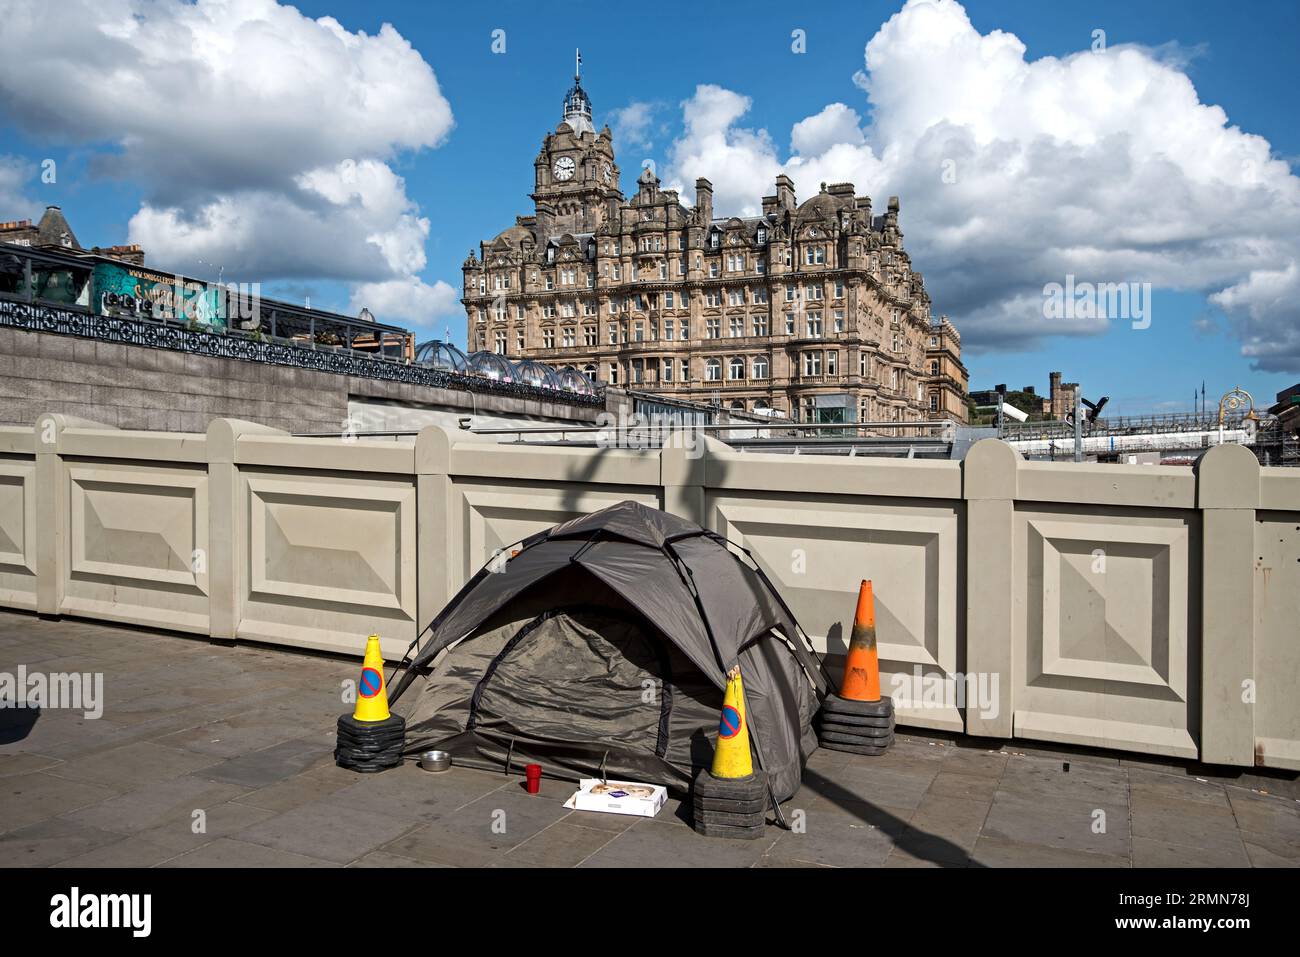 Obdachlosenzelt auf der Waverley Bridge mit dem fünf-Sterne-Balmoral Hotel im Hintergrund. Edinburgh, Schottland, Großbritannien. Stockfoto